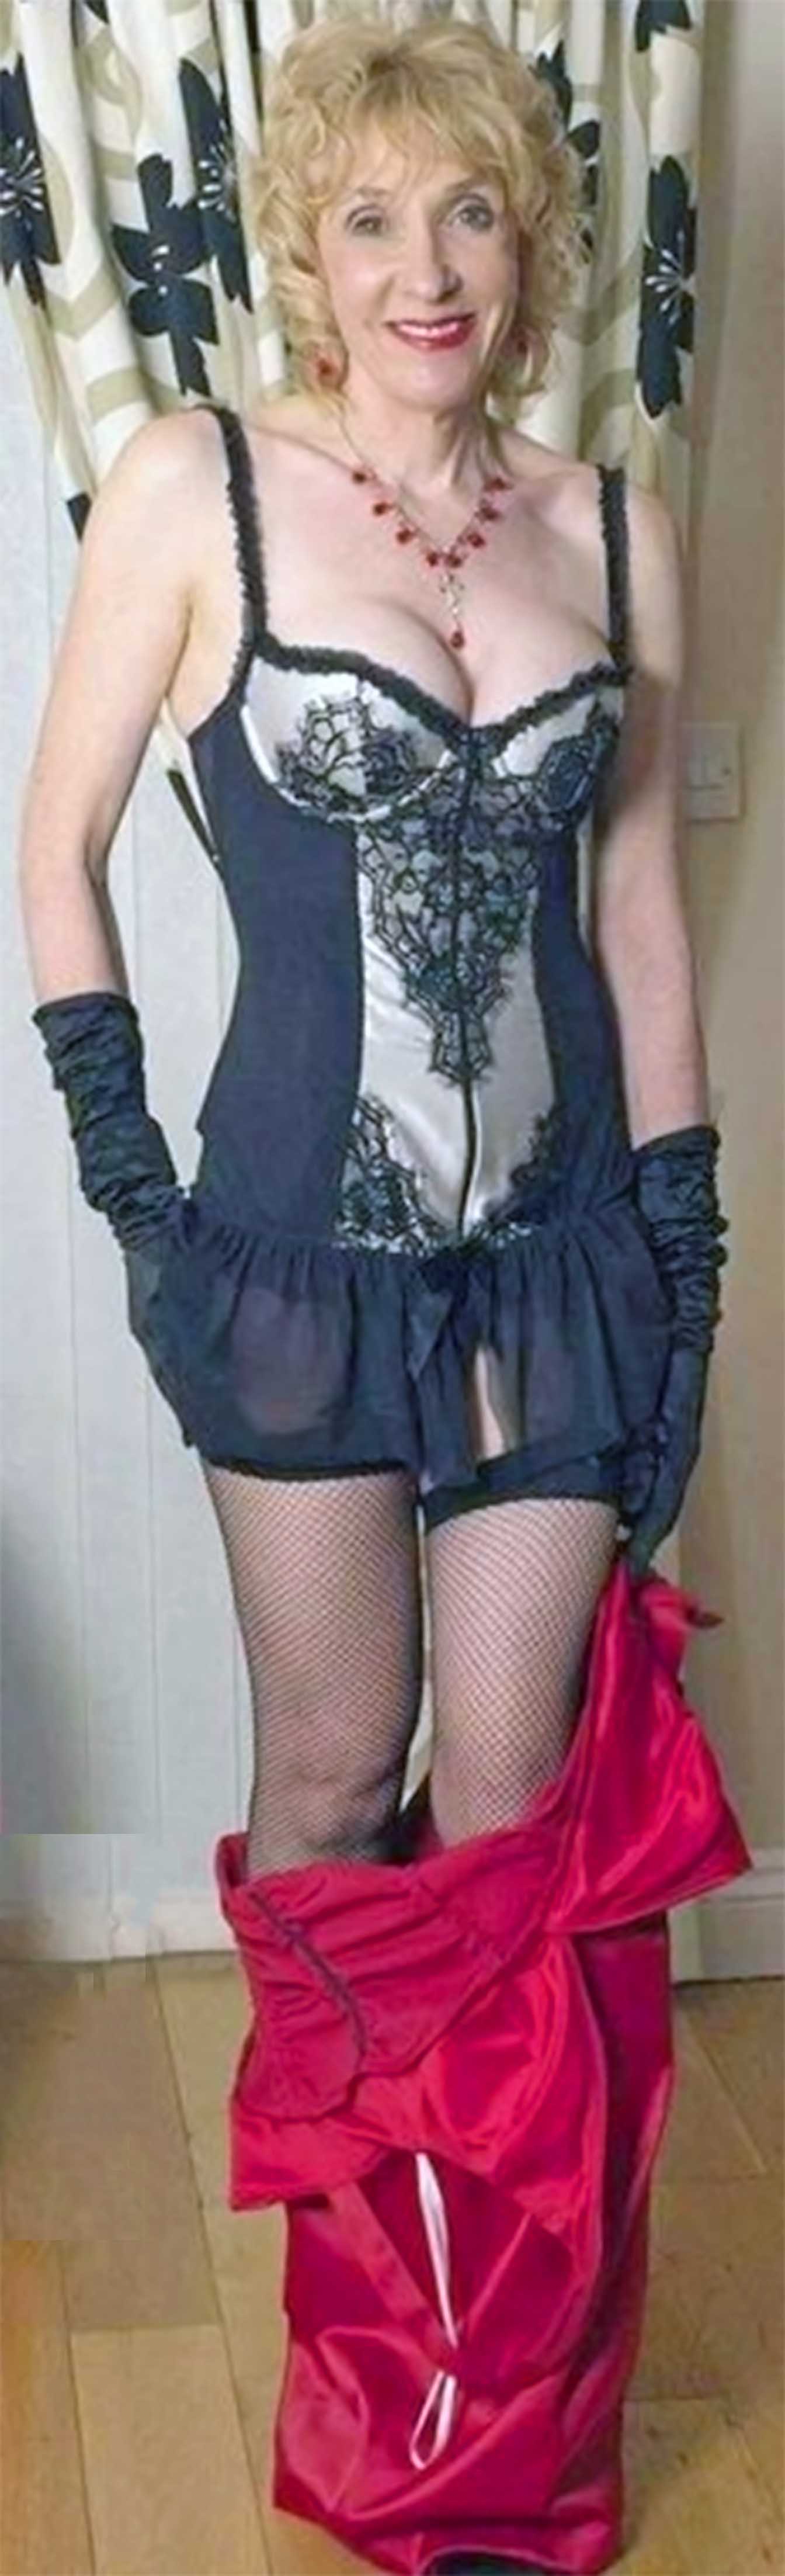 Mature female corset photos